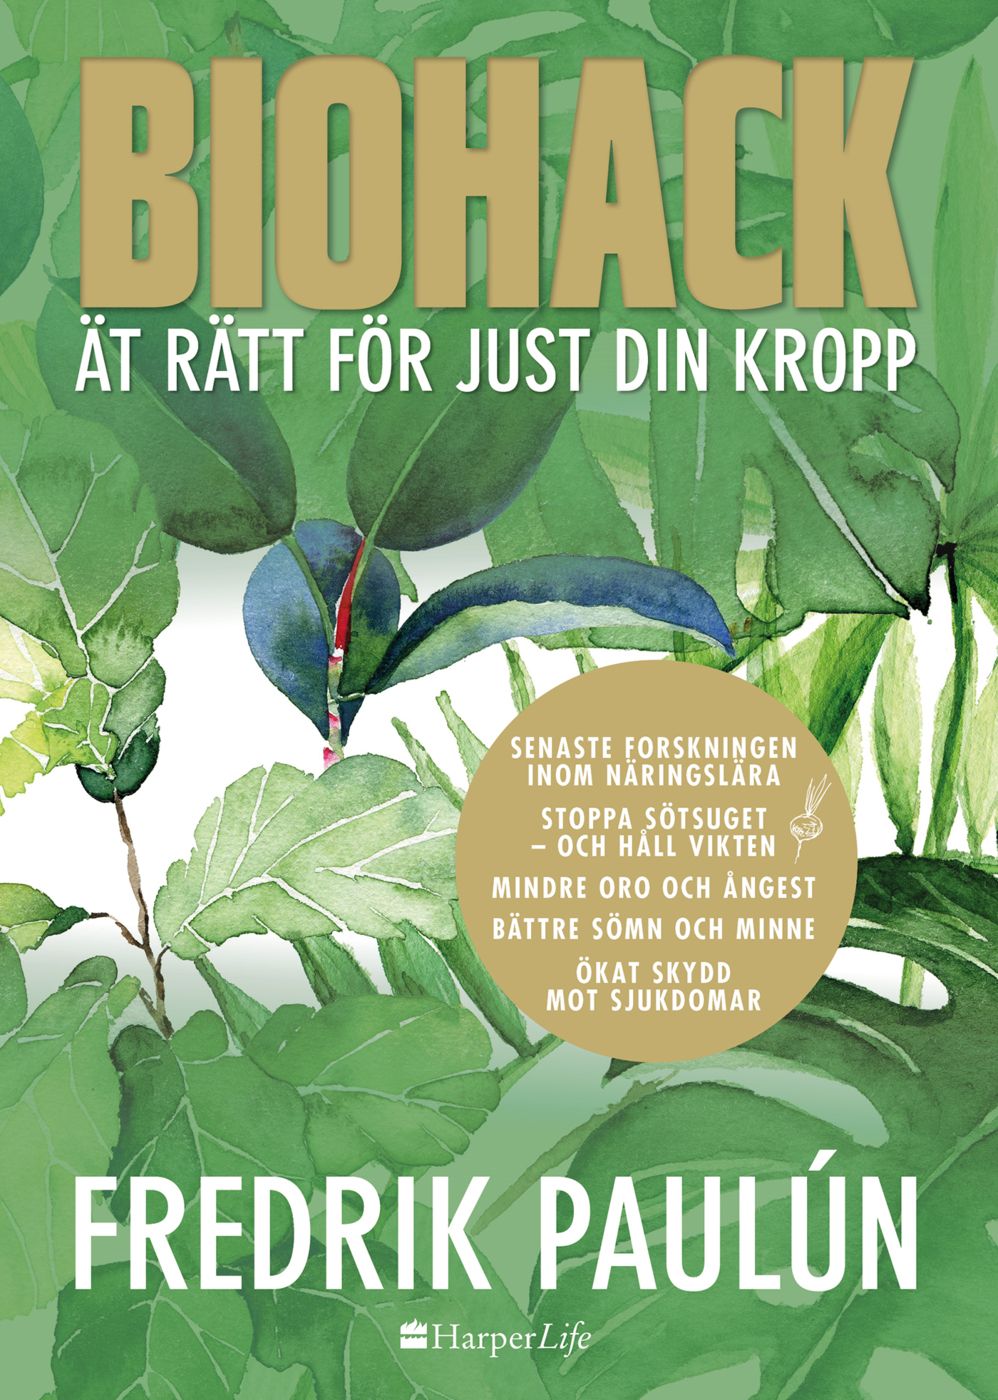 Biohack - ät rätt för just din kropp, e-bog af Fredrik Paulún